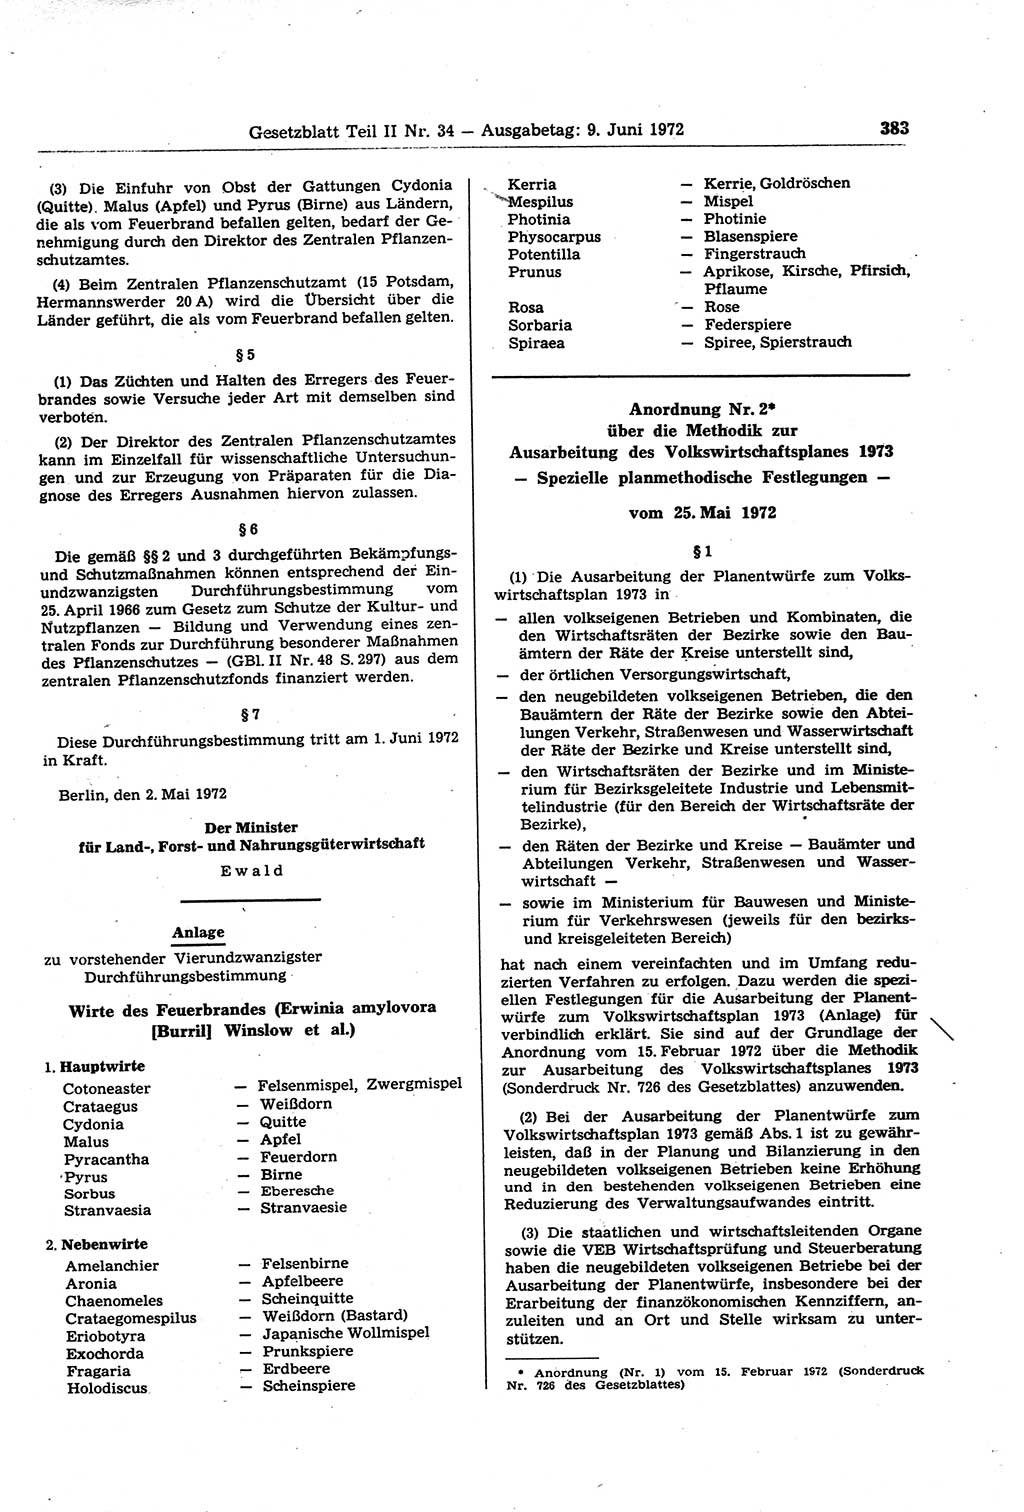 Gesetzblatt (GBl.) der Deutschen Demokratischen Republik (DDR) Teil ⅠⅠ 1972, Seite 383 (GBl. DDR ⅠⅠ 1972, S. 383)